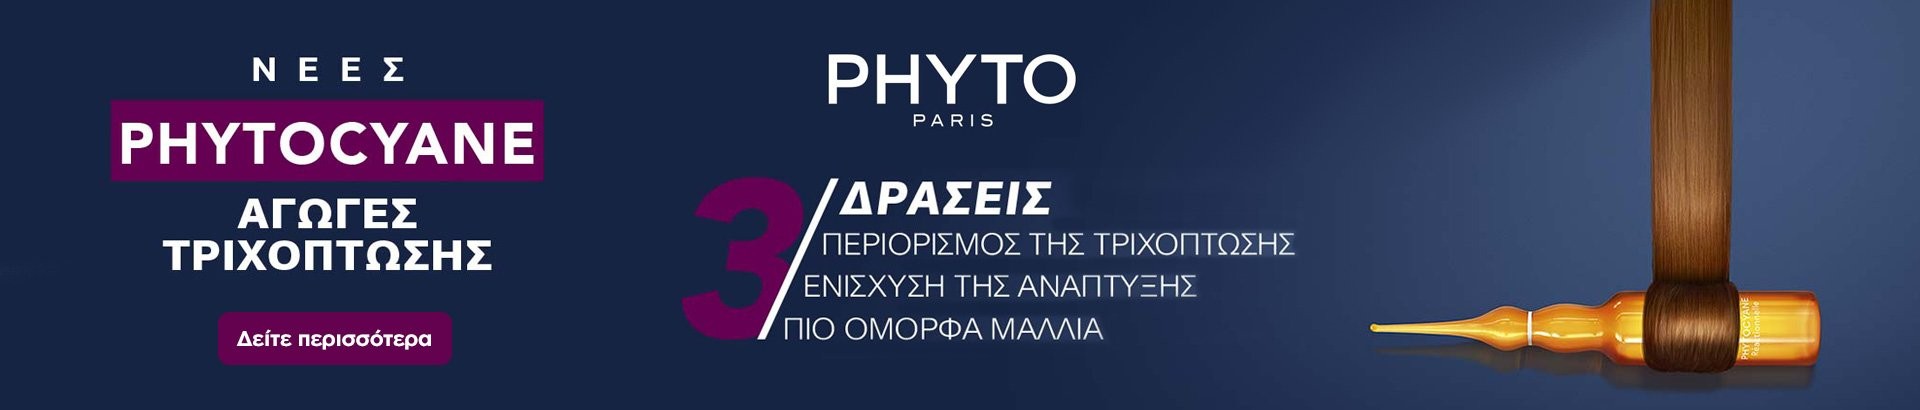 phyto paris